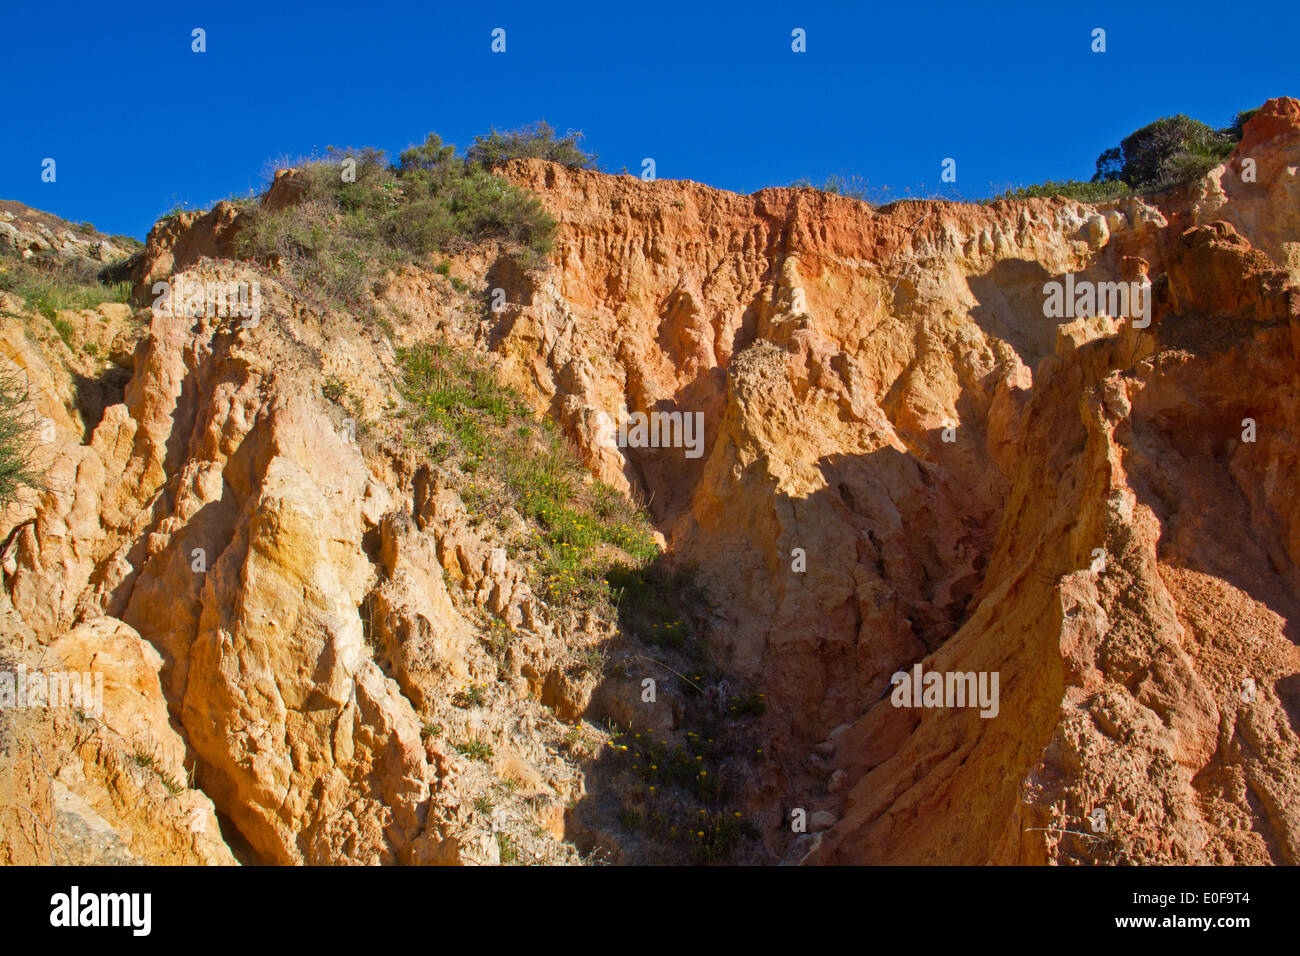 Soil erosion in the Algarve, Portugal Stock Photo